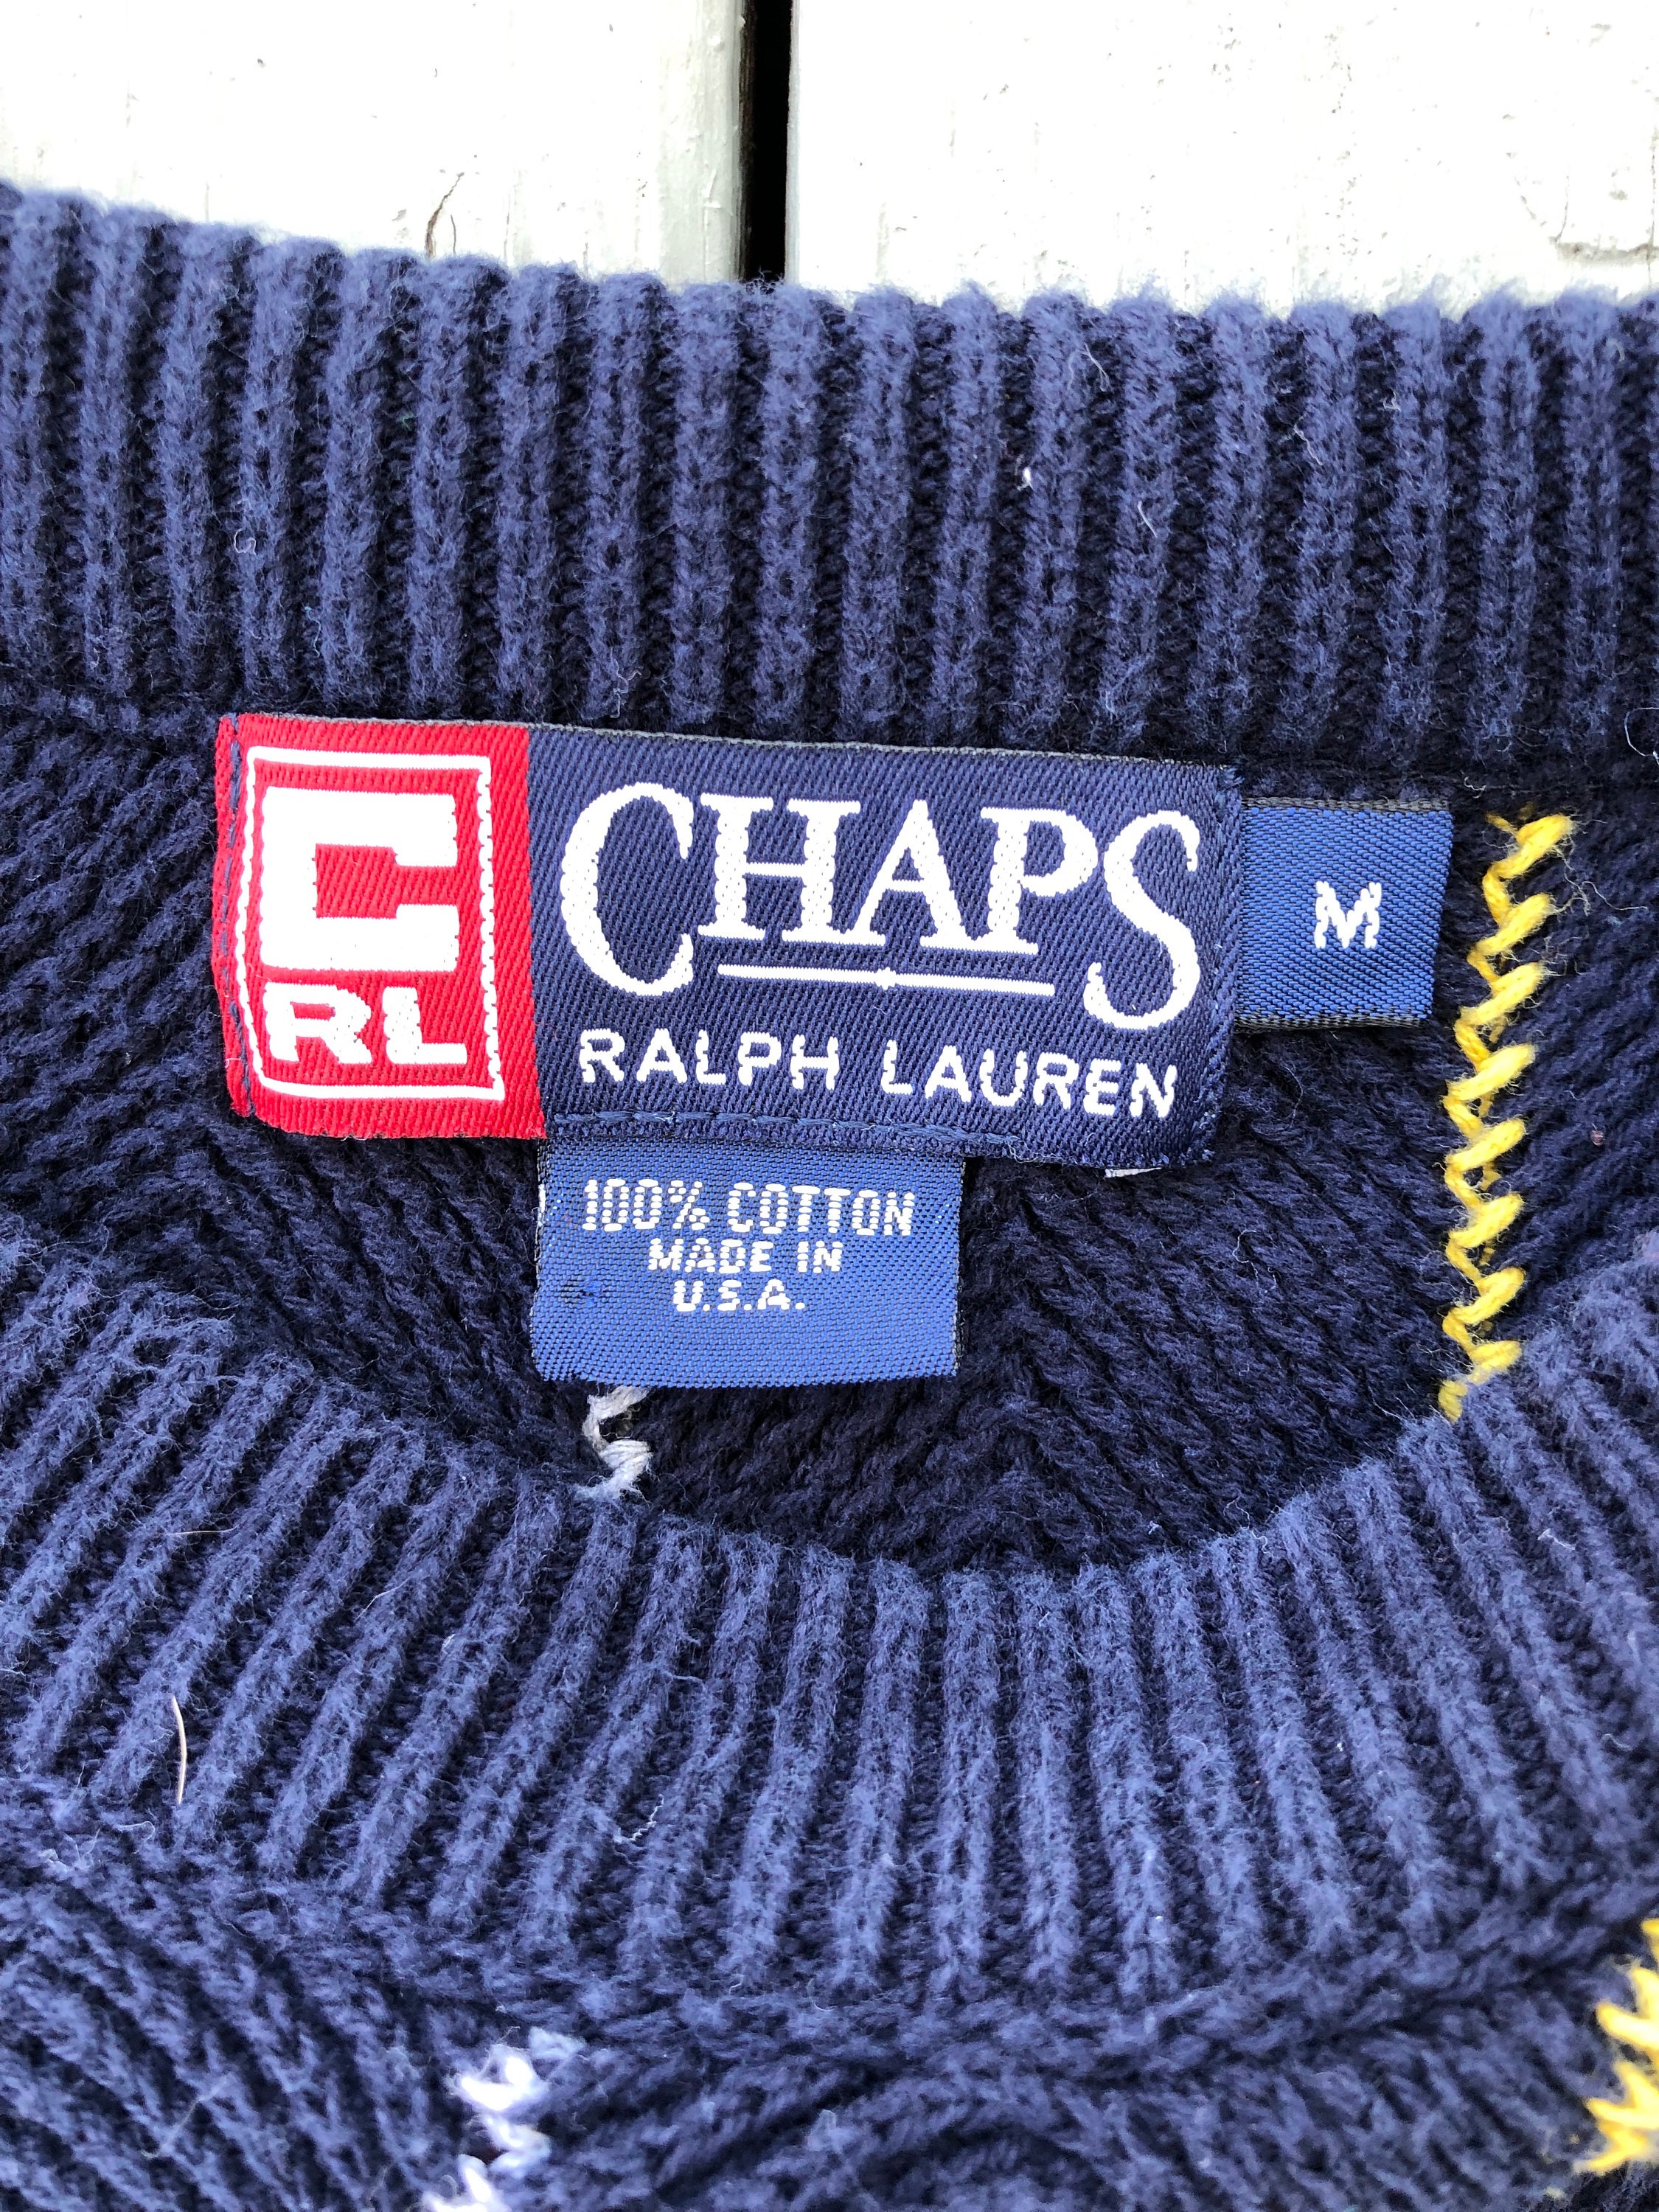 Vintage 1990's Chaps Ralph Lauren striped knit | Etsy